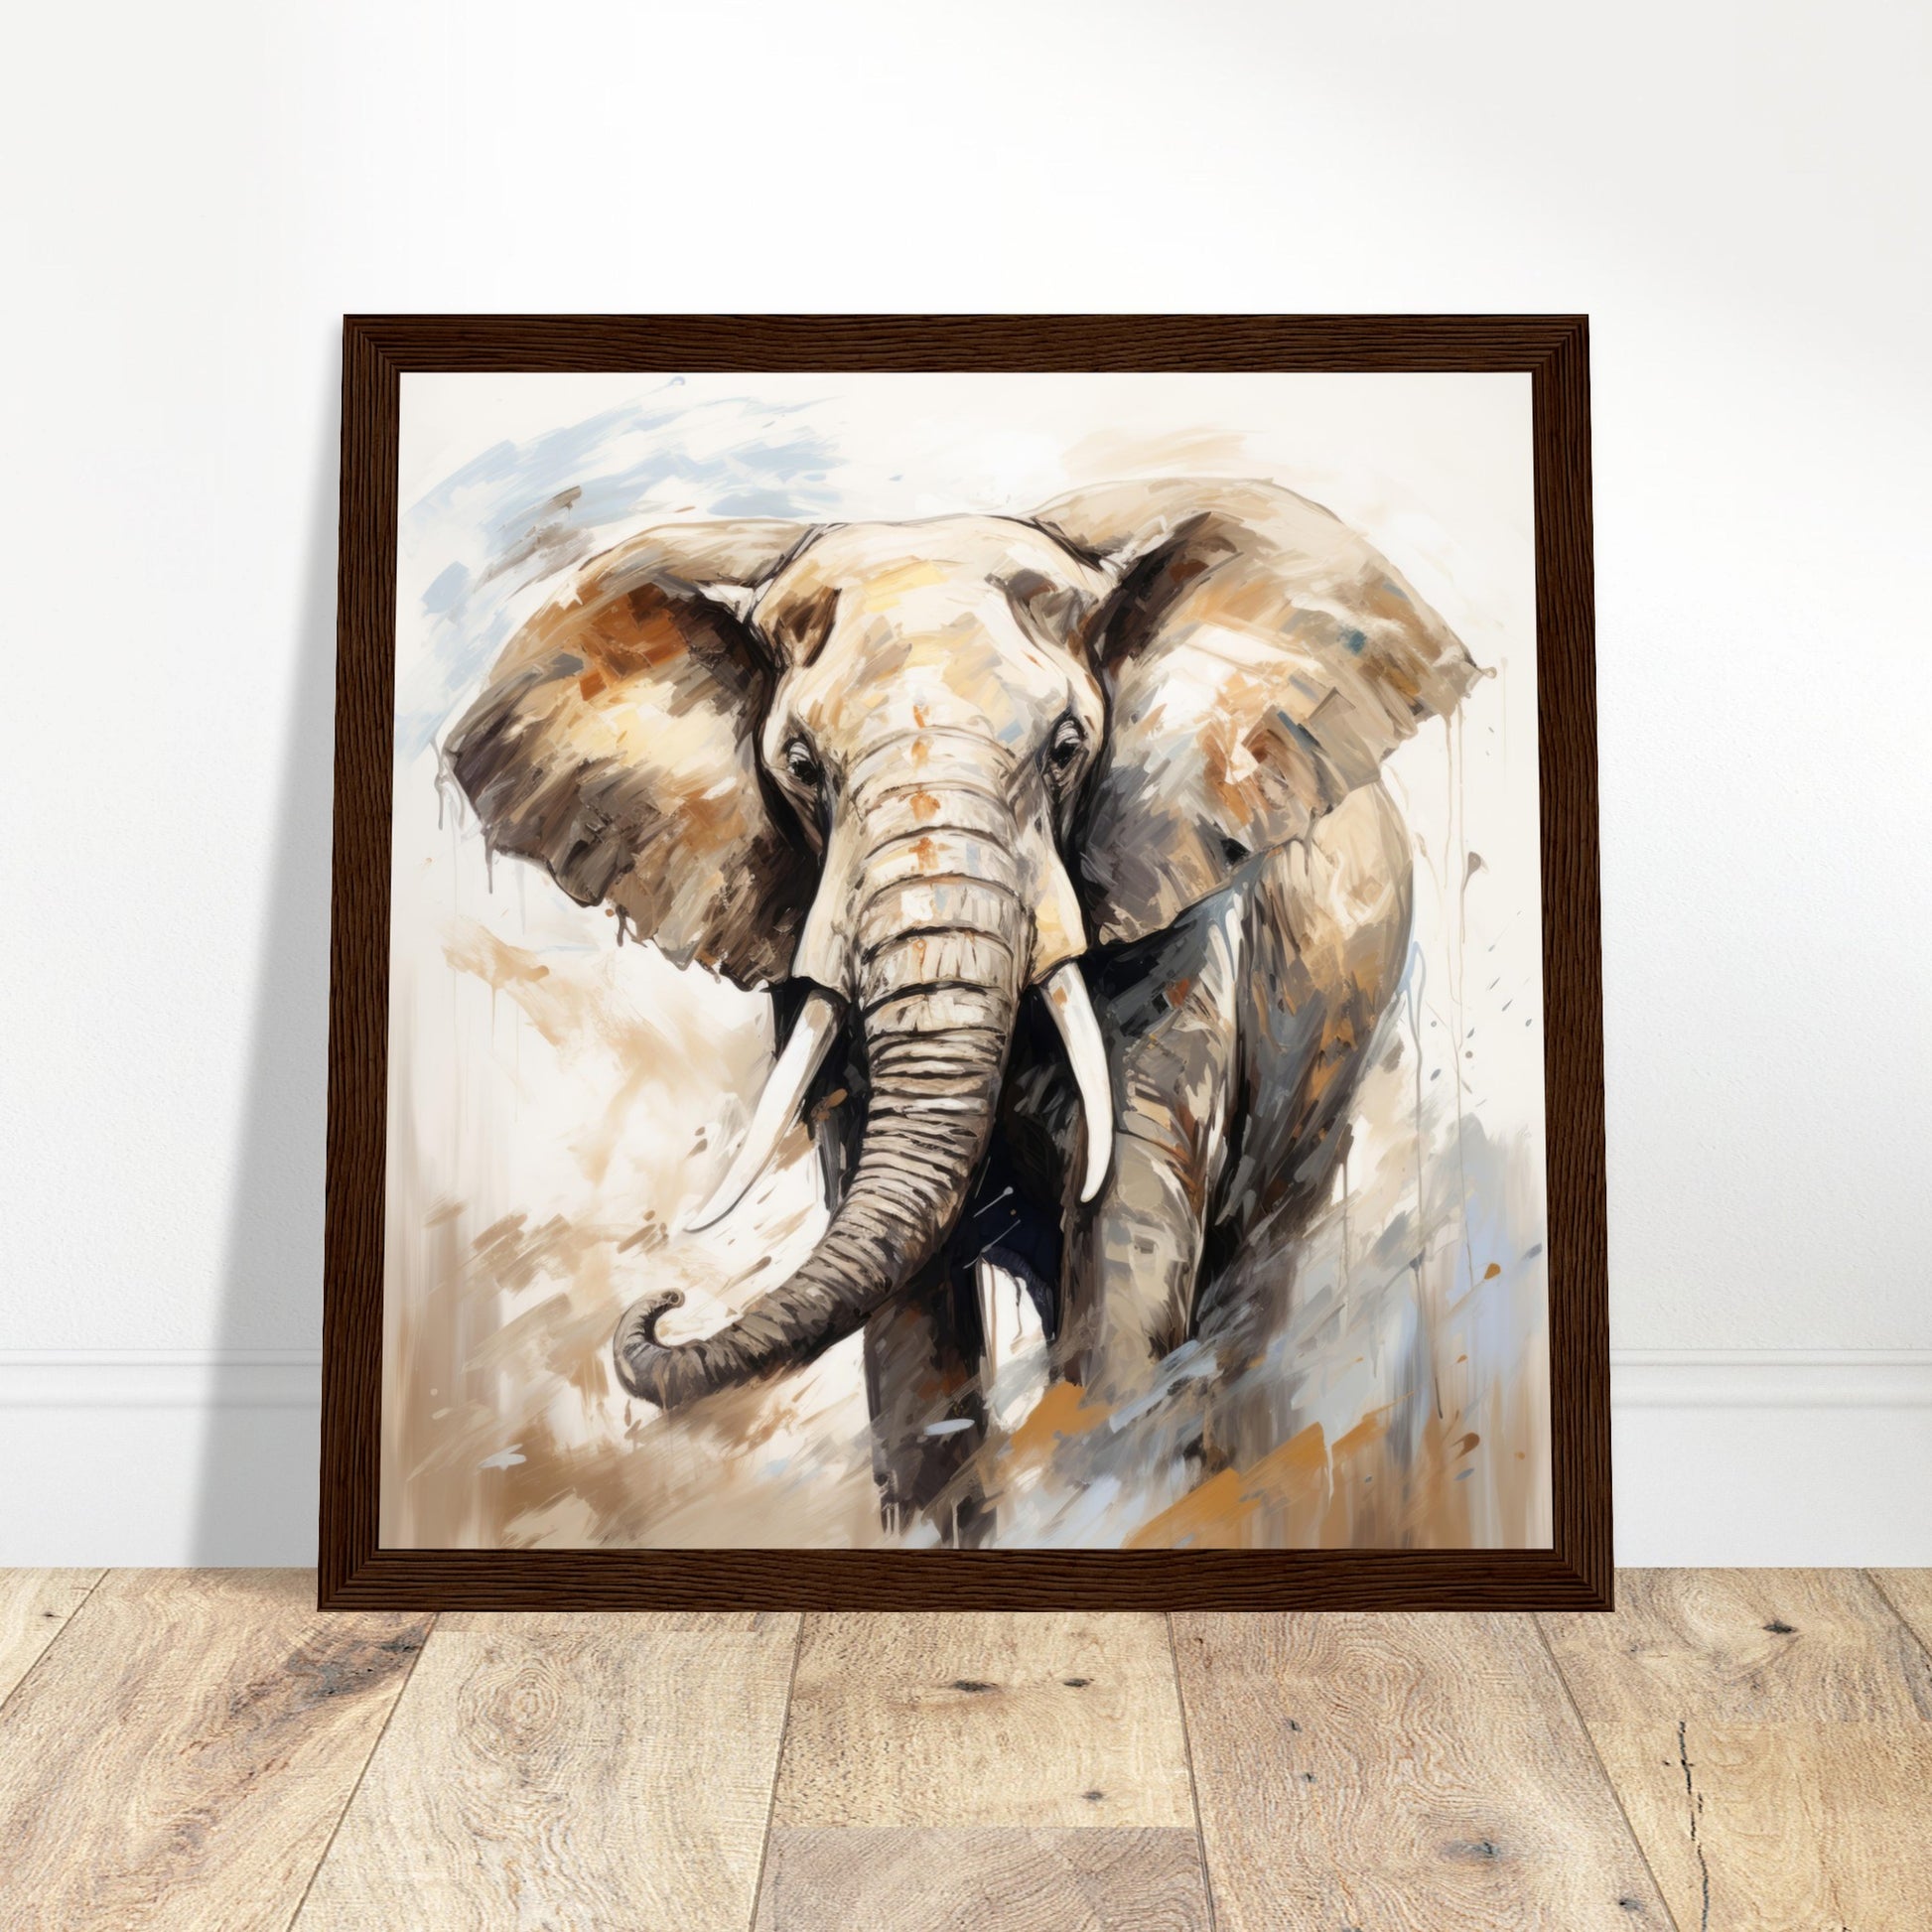 Elephant Giants Artwork - Print Room Ltd White frame 70x70 cm / 28x28"